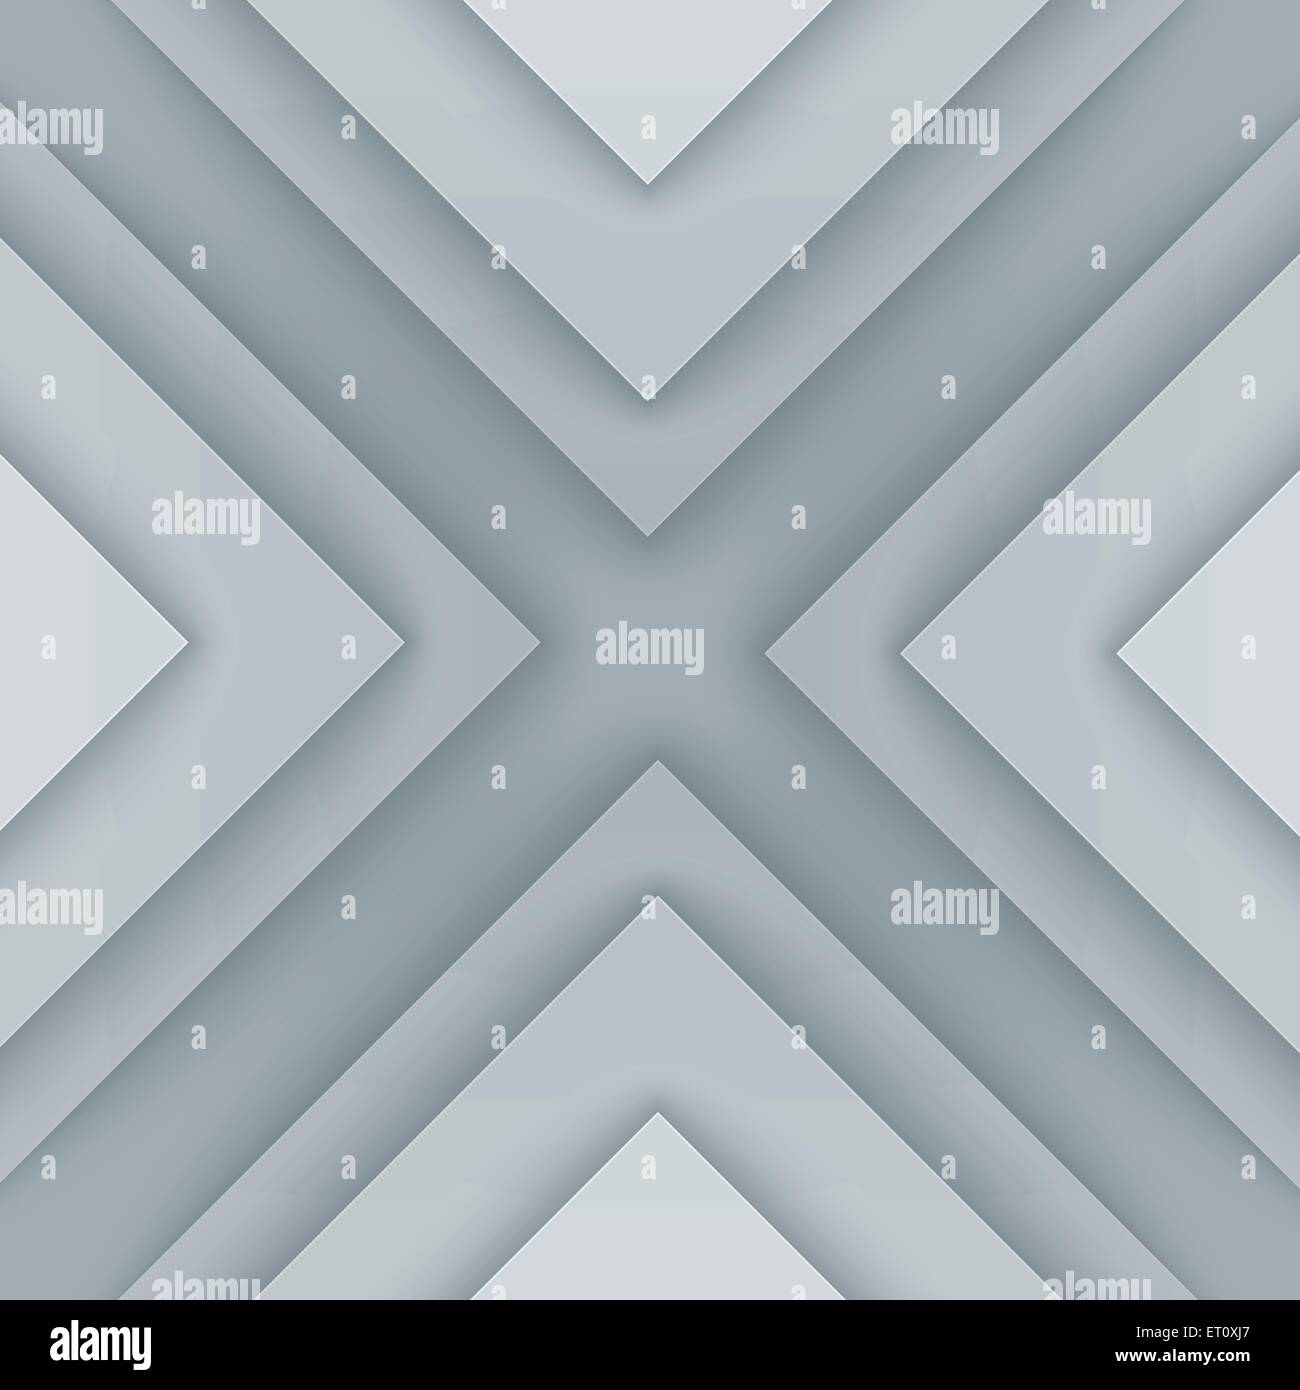 Triangle gris et blanc abstrait des formes. Vecteur EPS RVB 10 Illustration de Vecteur